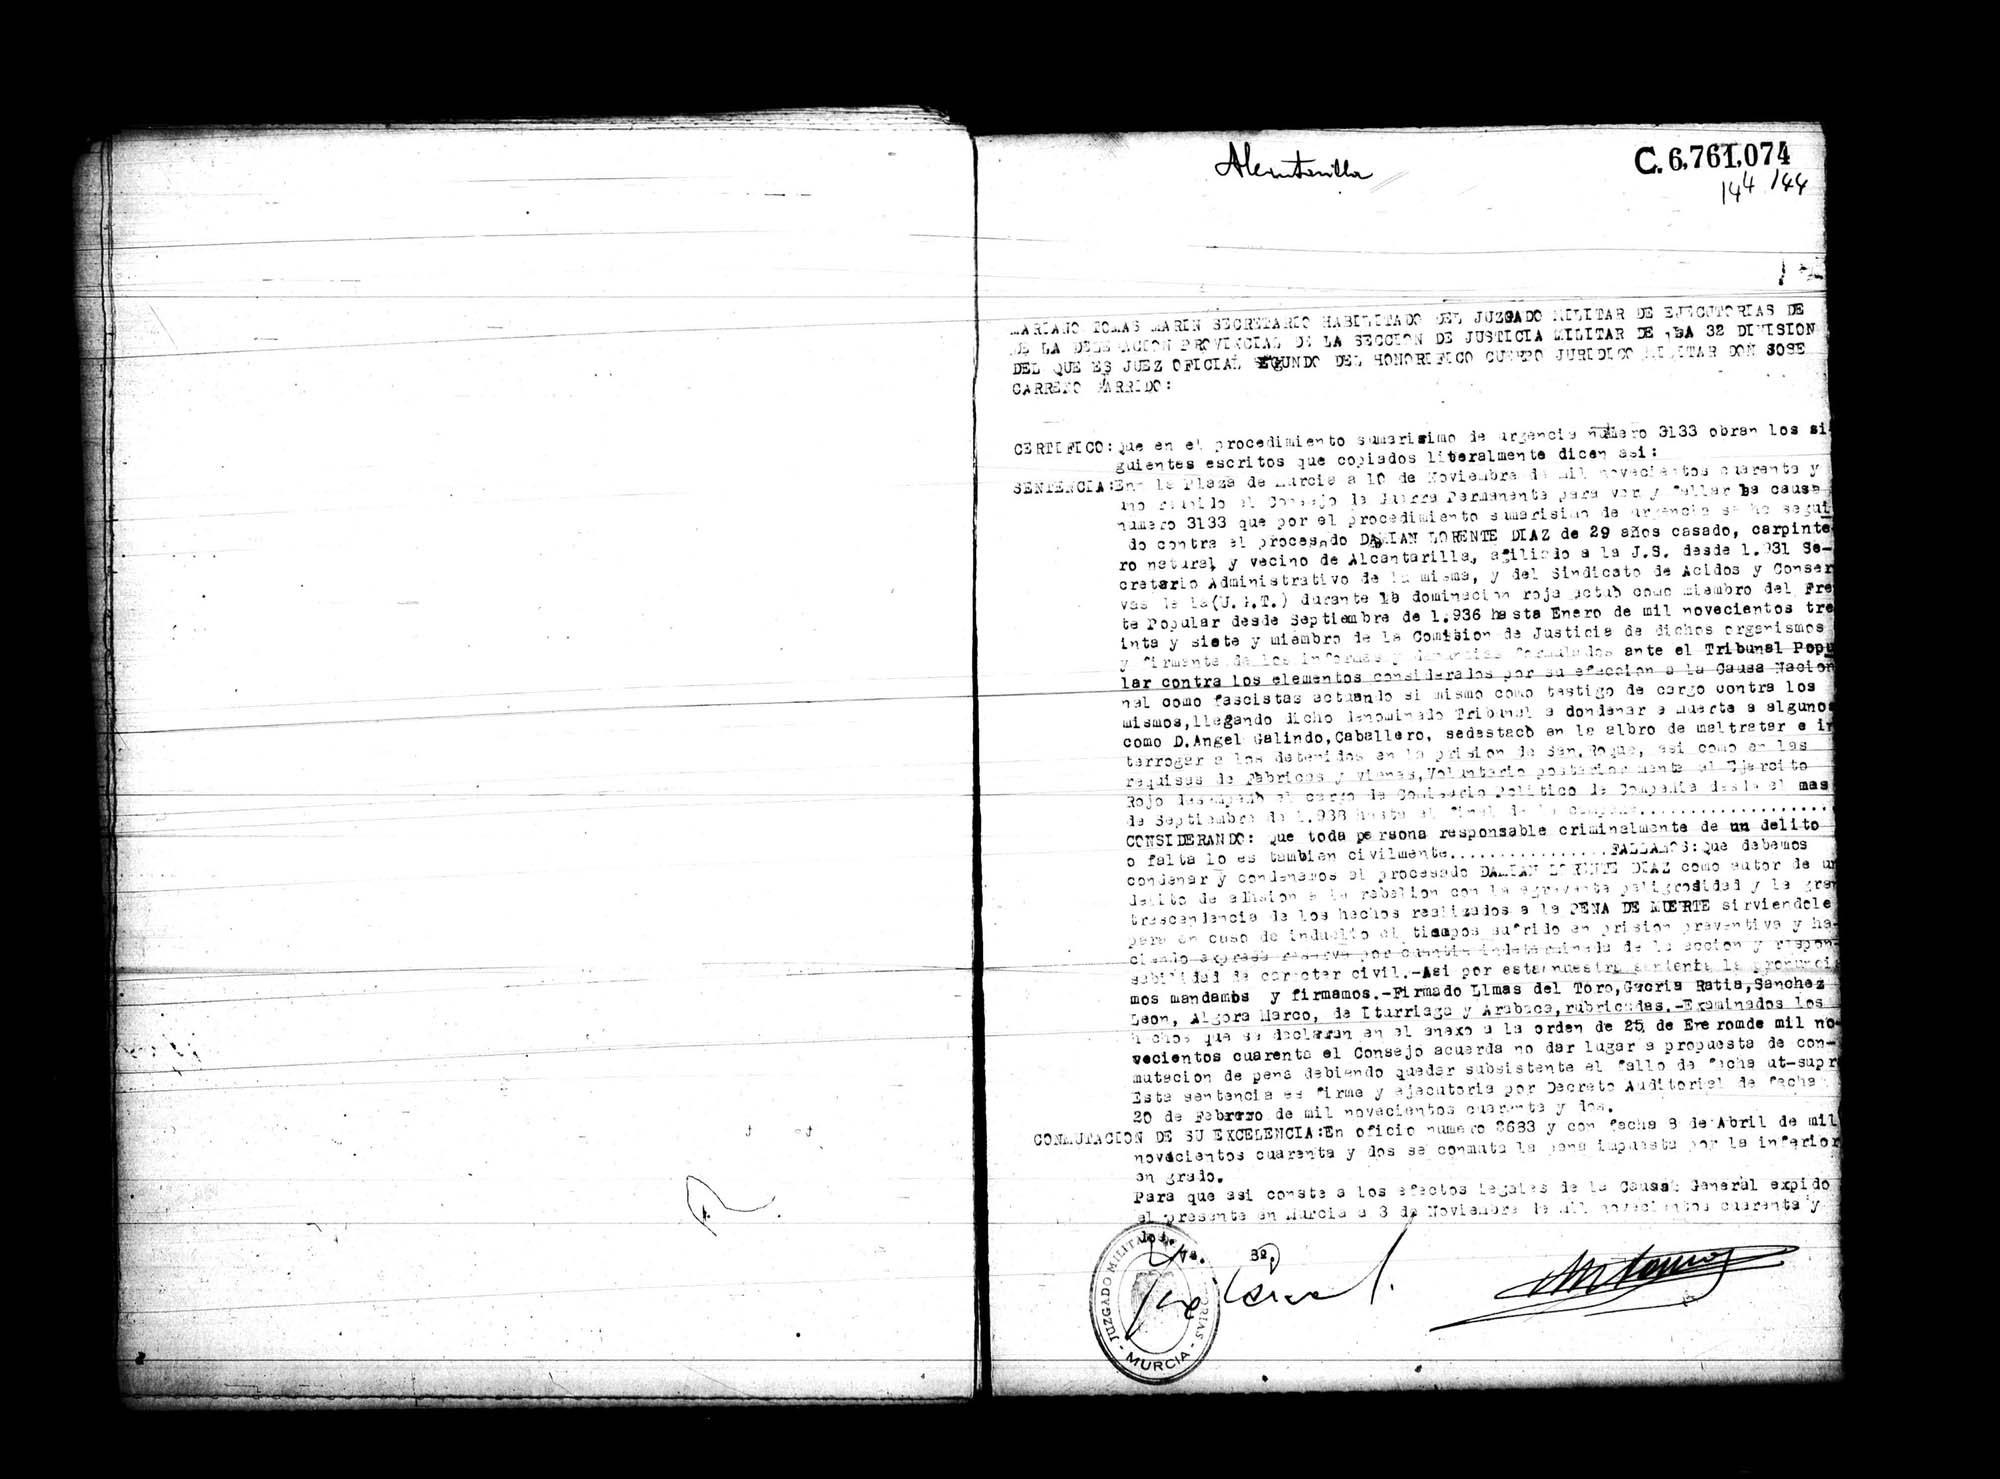 Certificado de la sentencia pronunciada contra Damián Lorente Díaz, causa 3133, el 10 de noviembre de 1941 en Murcia.